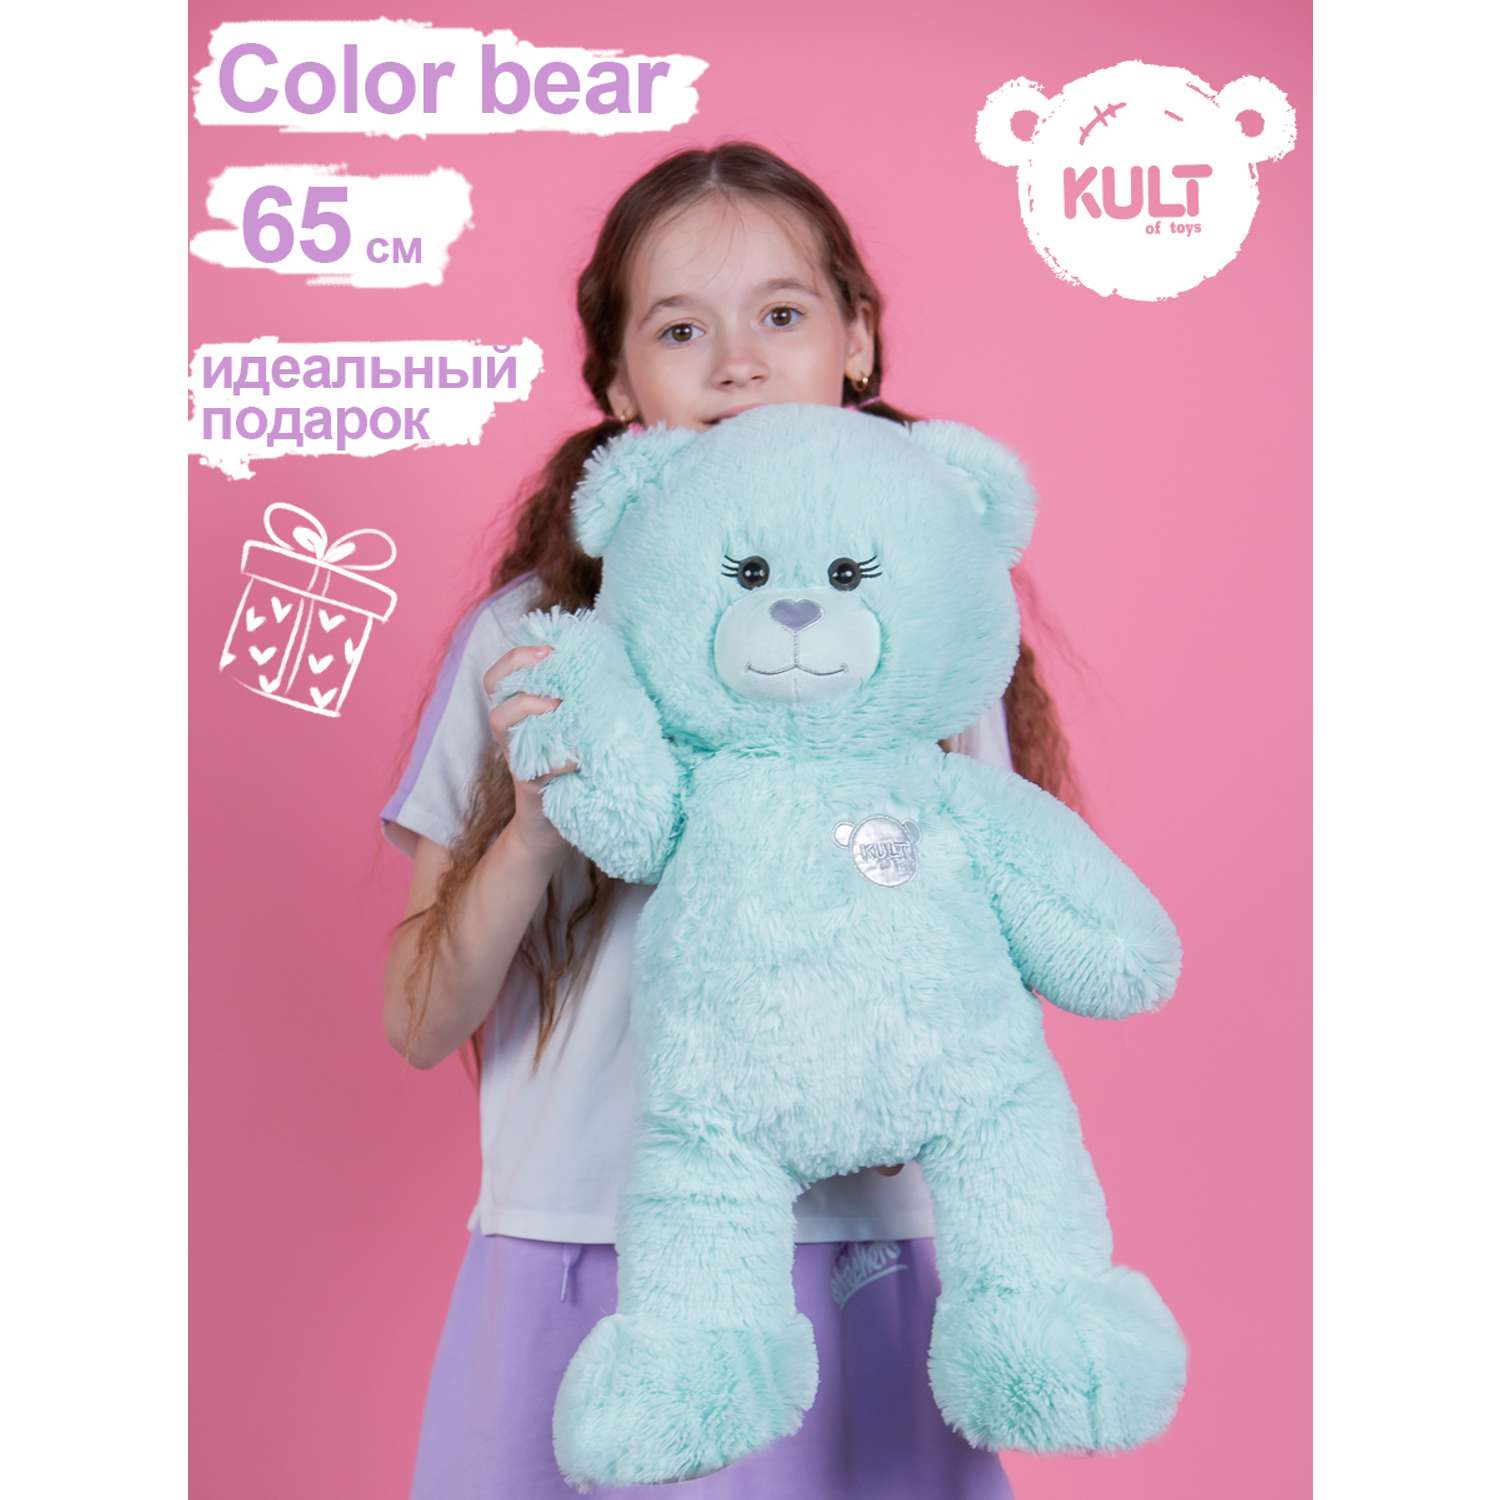 Мягкая игрушка KULT of toys Плюшевый медведь Color Bear 65 см цвет мятный - фото 2